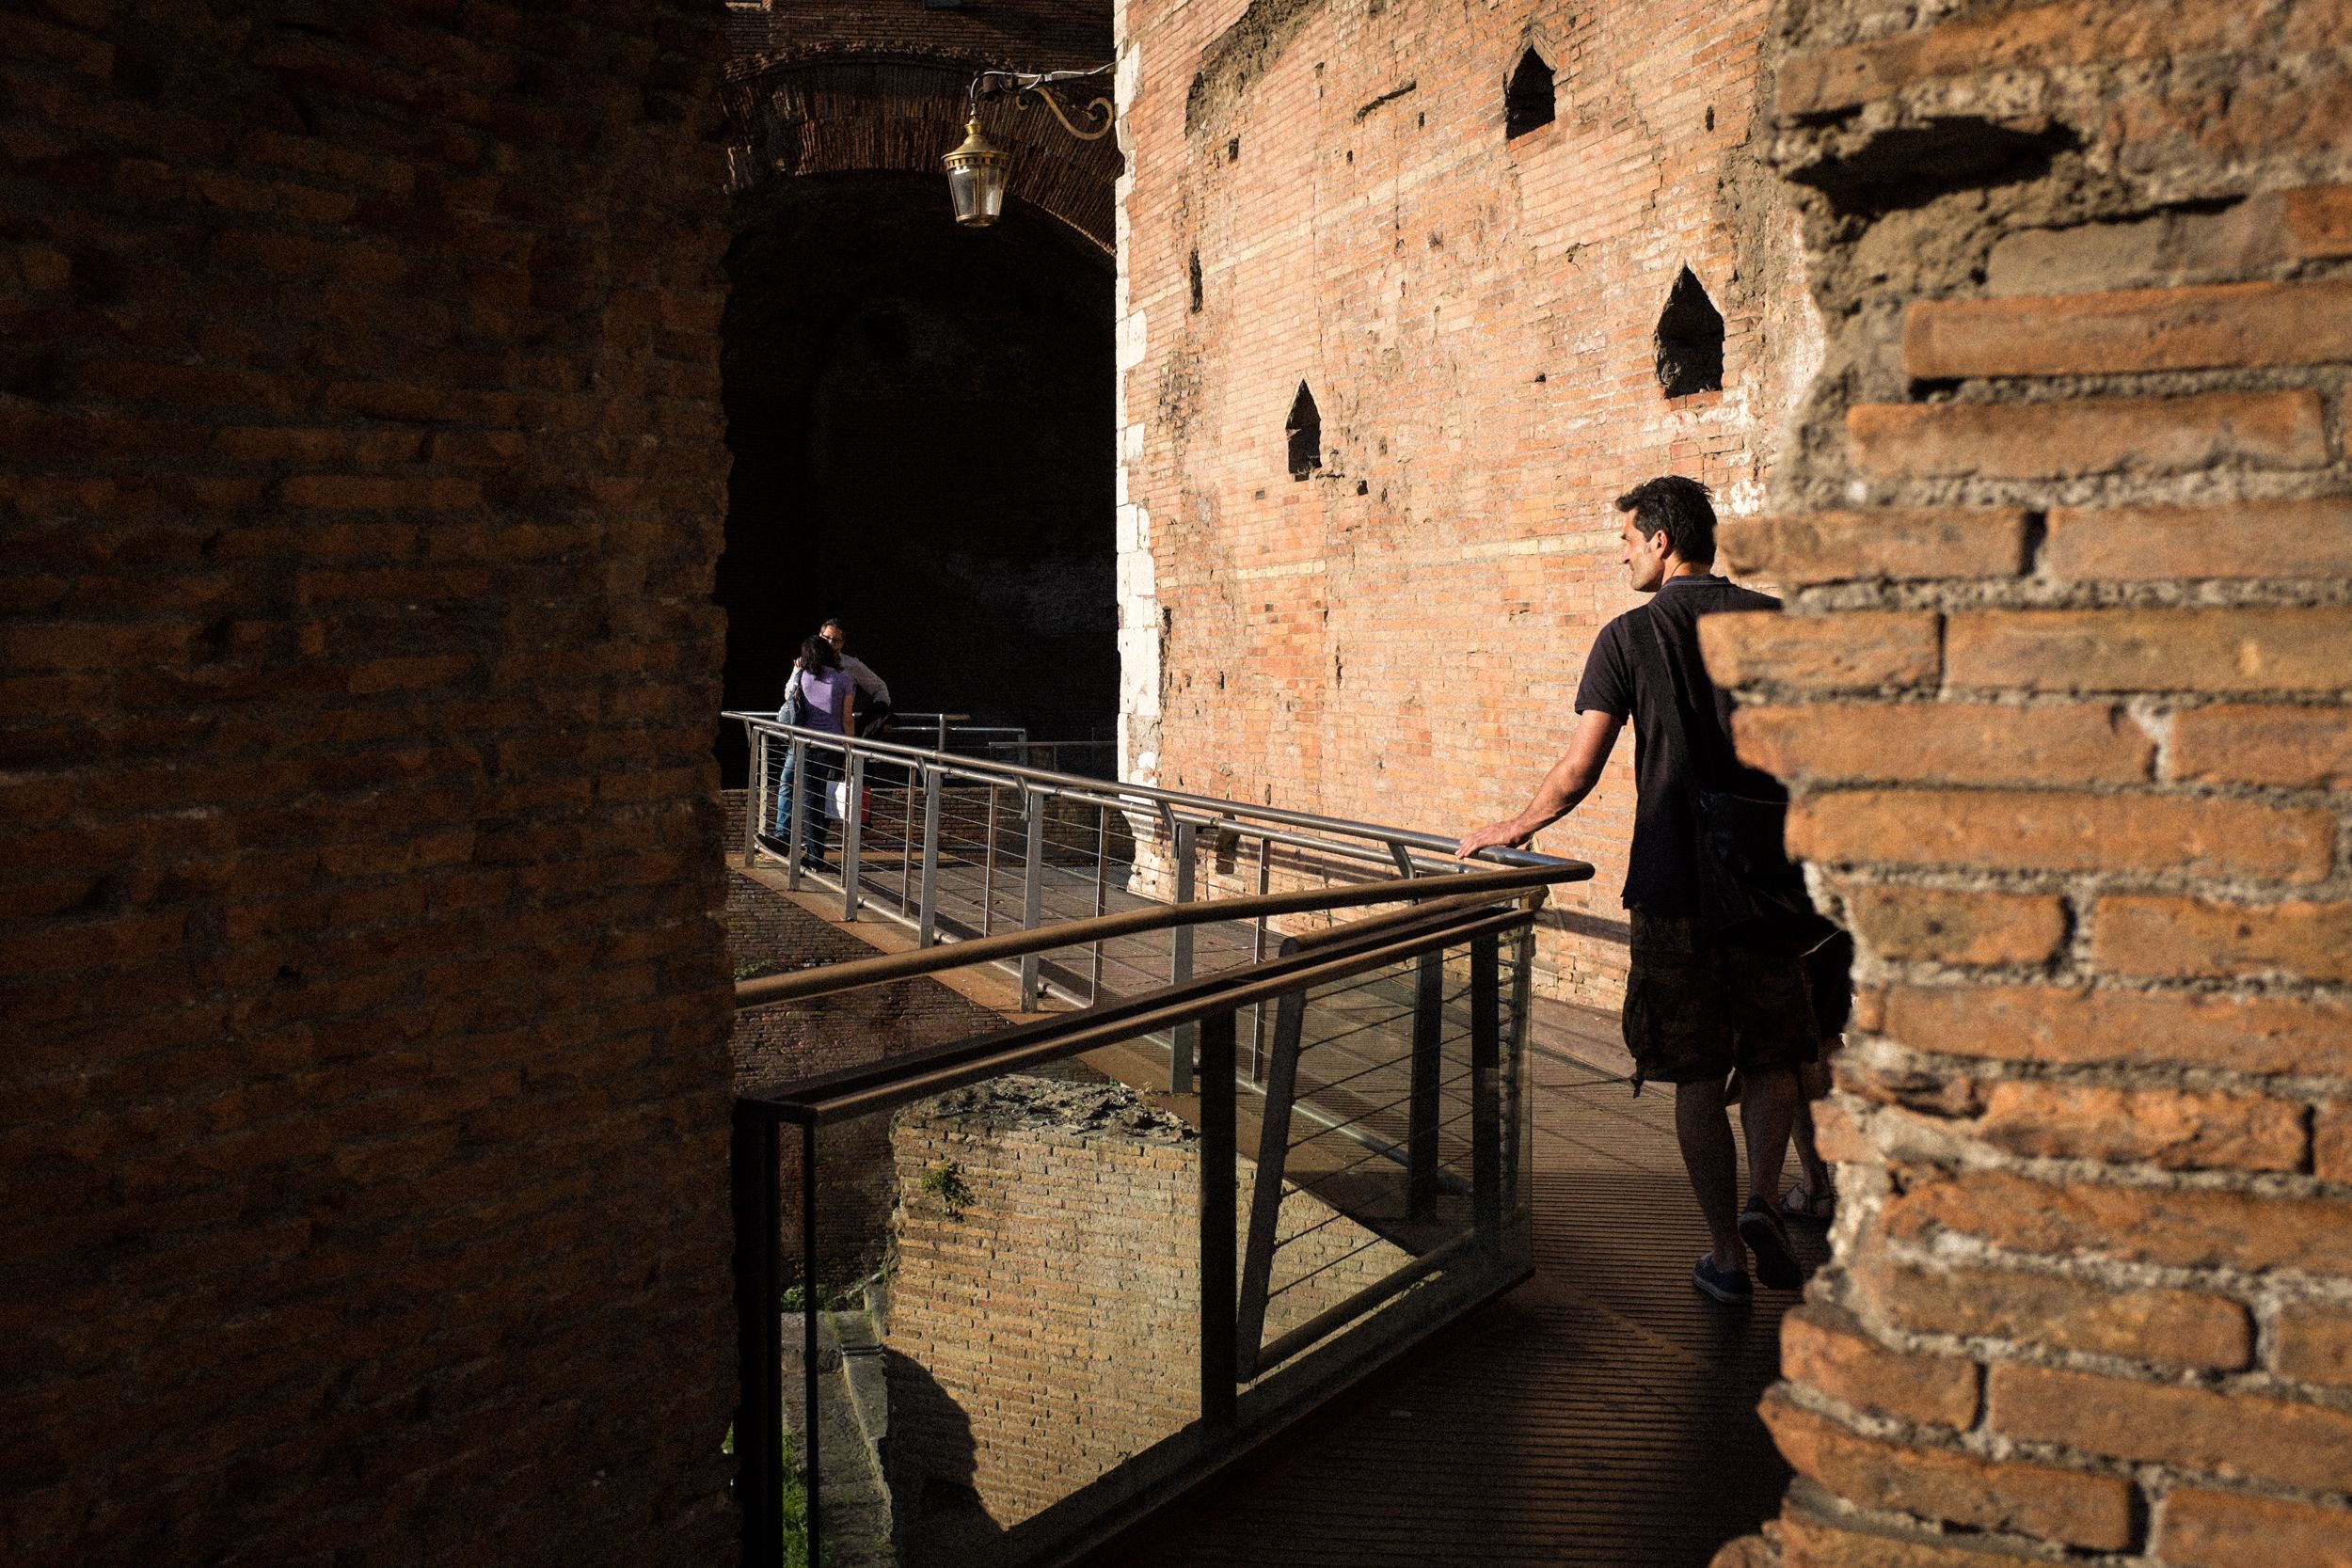 Rom bietet für die Street Photography hervorragende Lichtverhältnisse. In den verwinkelten Ruinen der Thermen des Diokletian in Rom lassen sich in den Abendstunden wunderbare Schattenspiele fotografieren.